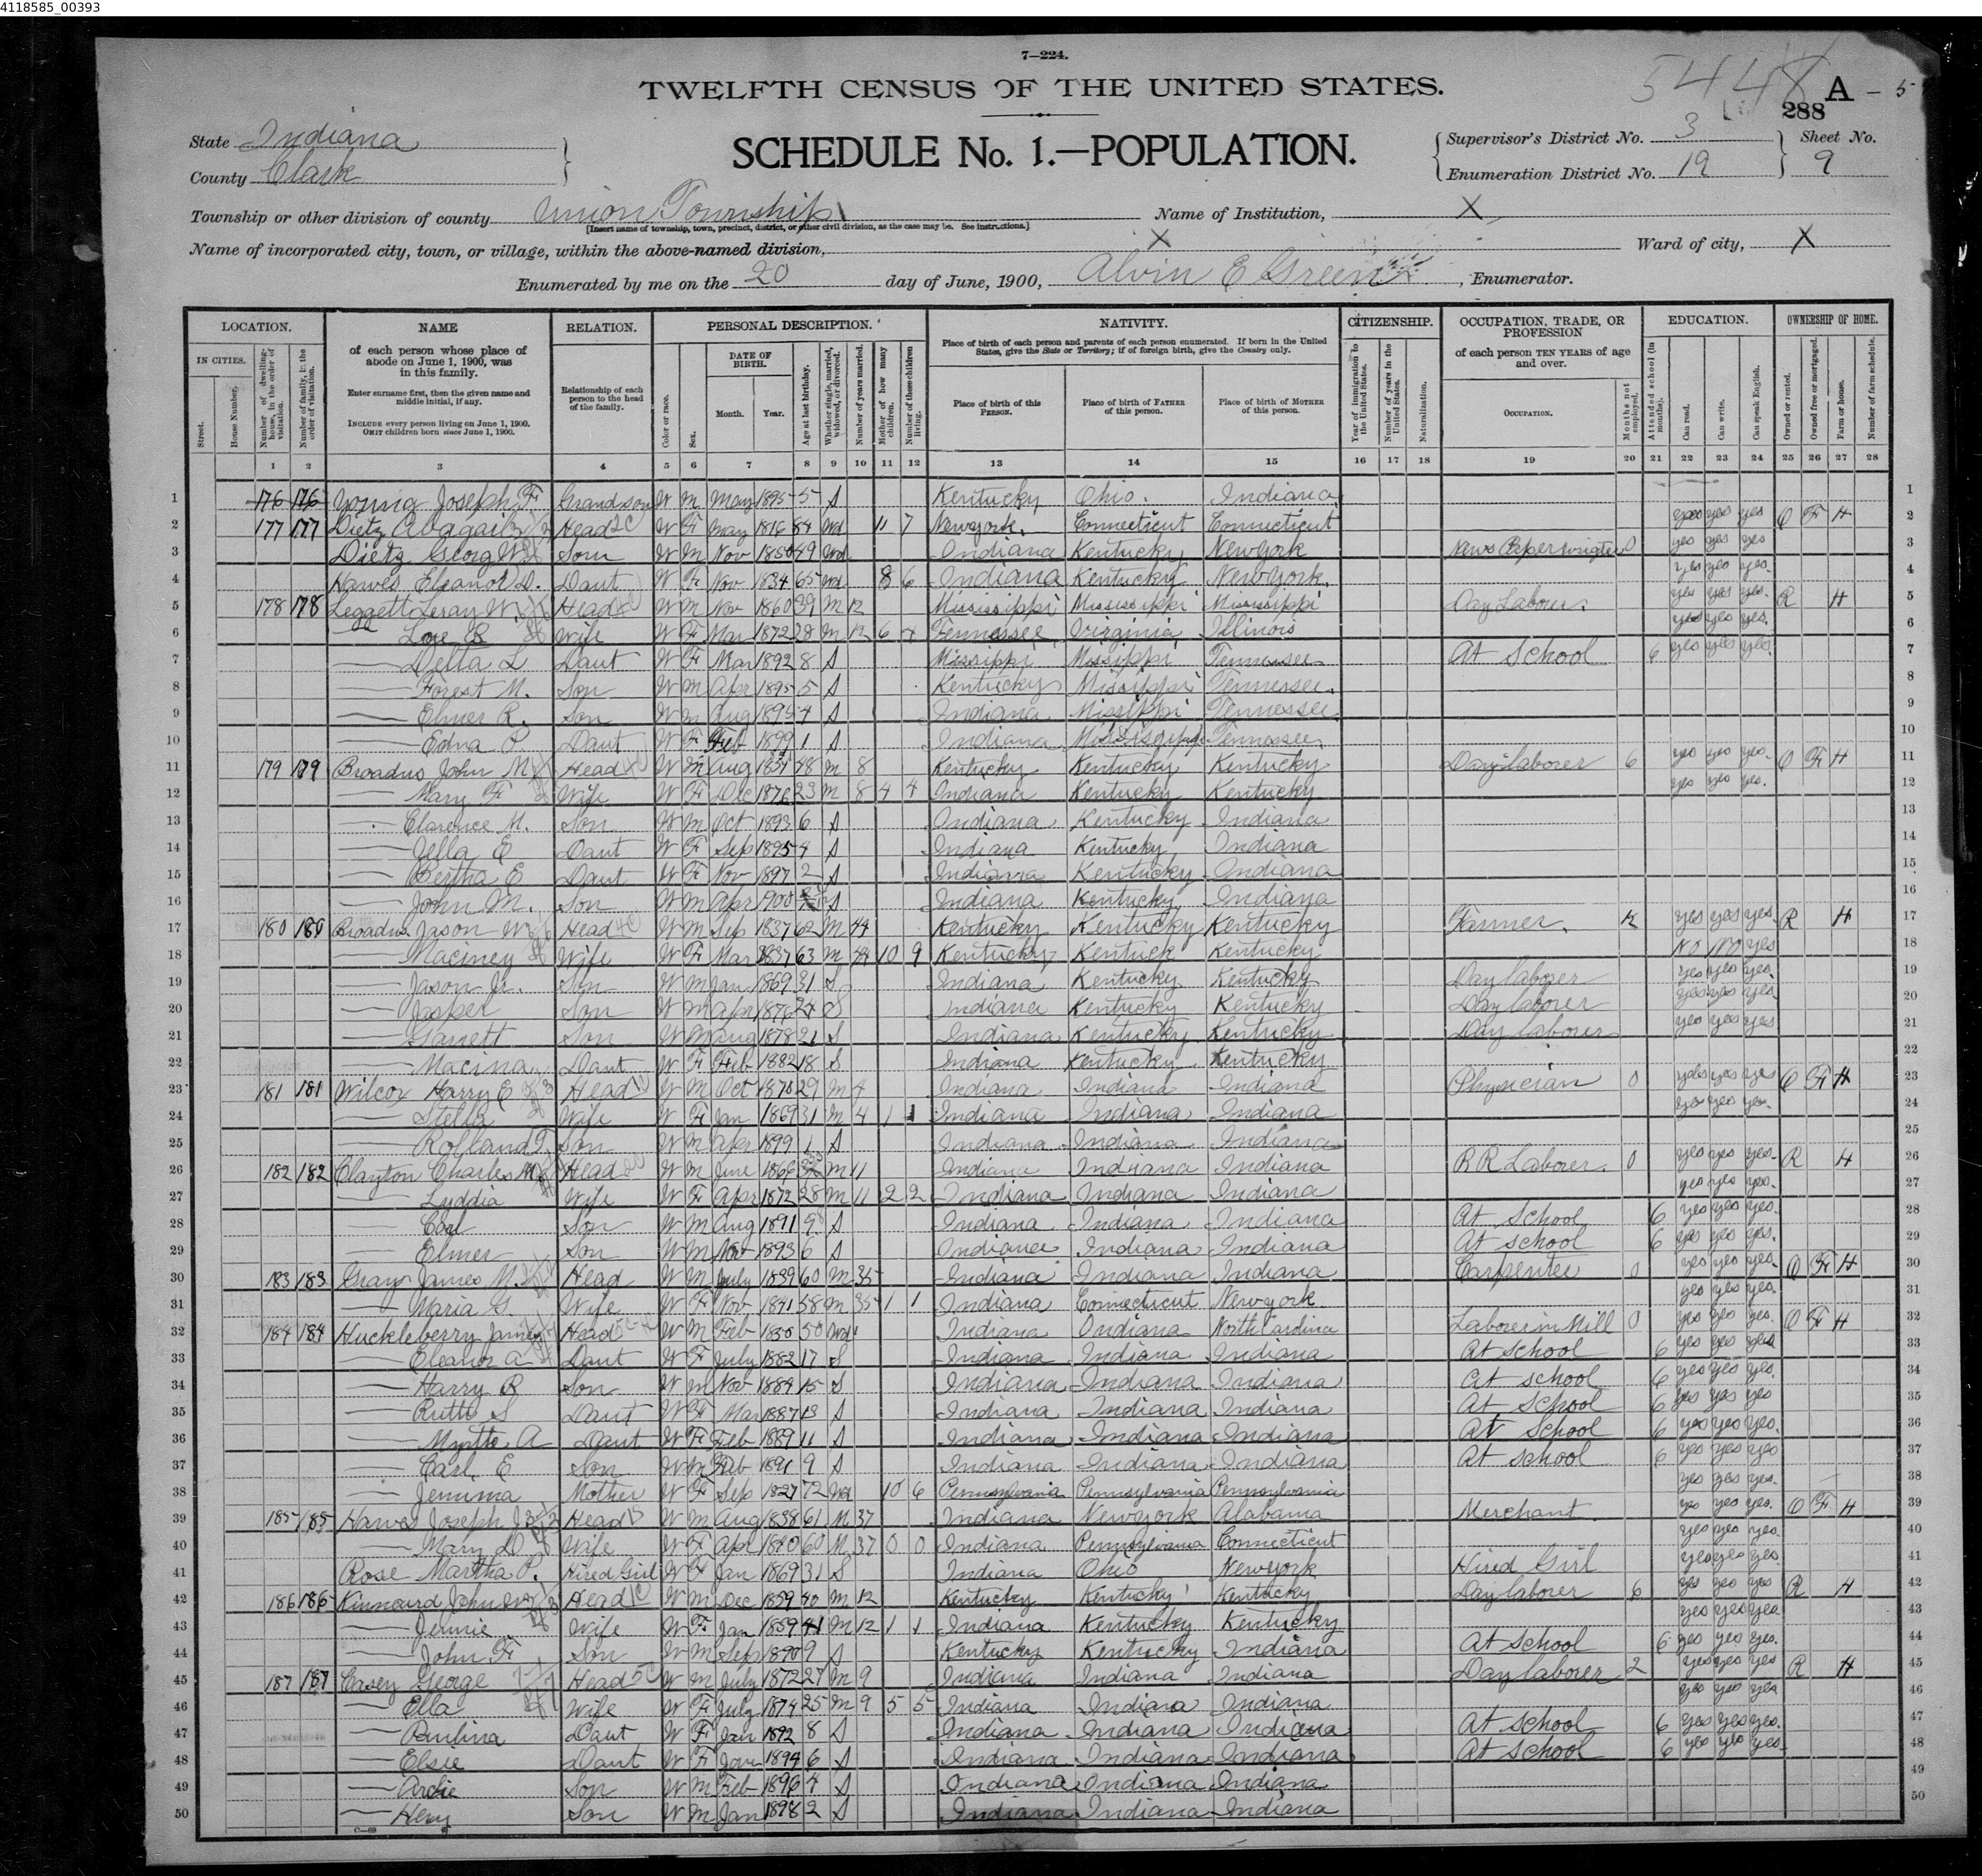 Wilcox 1900 census